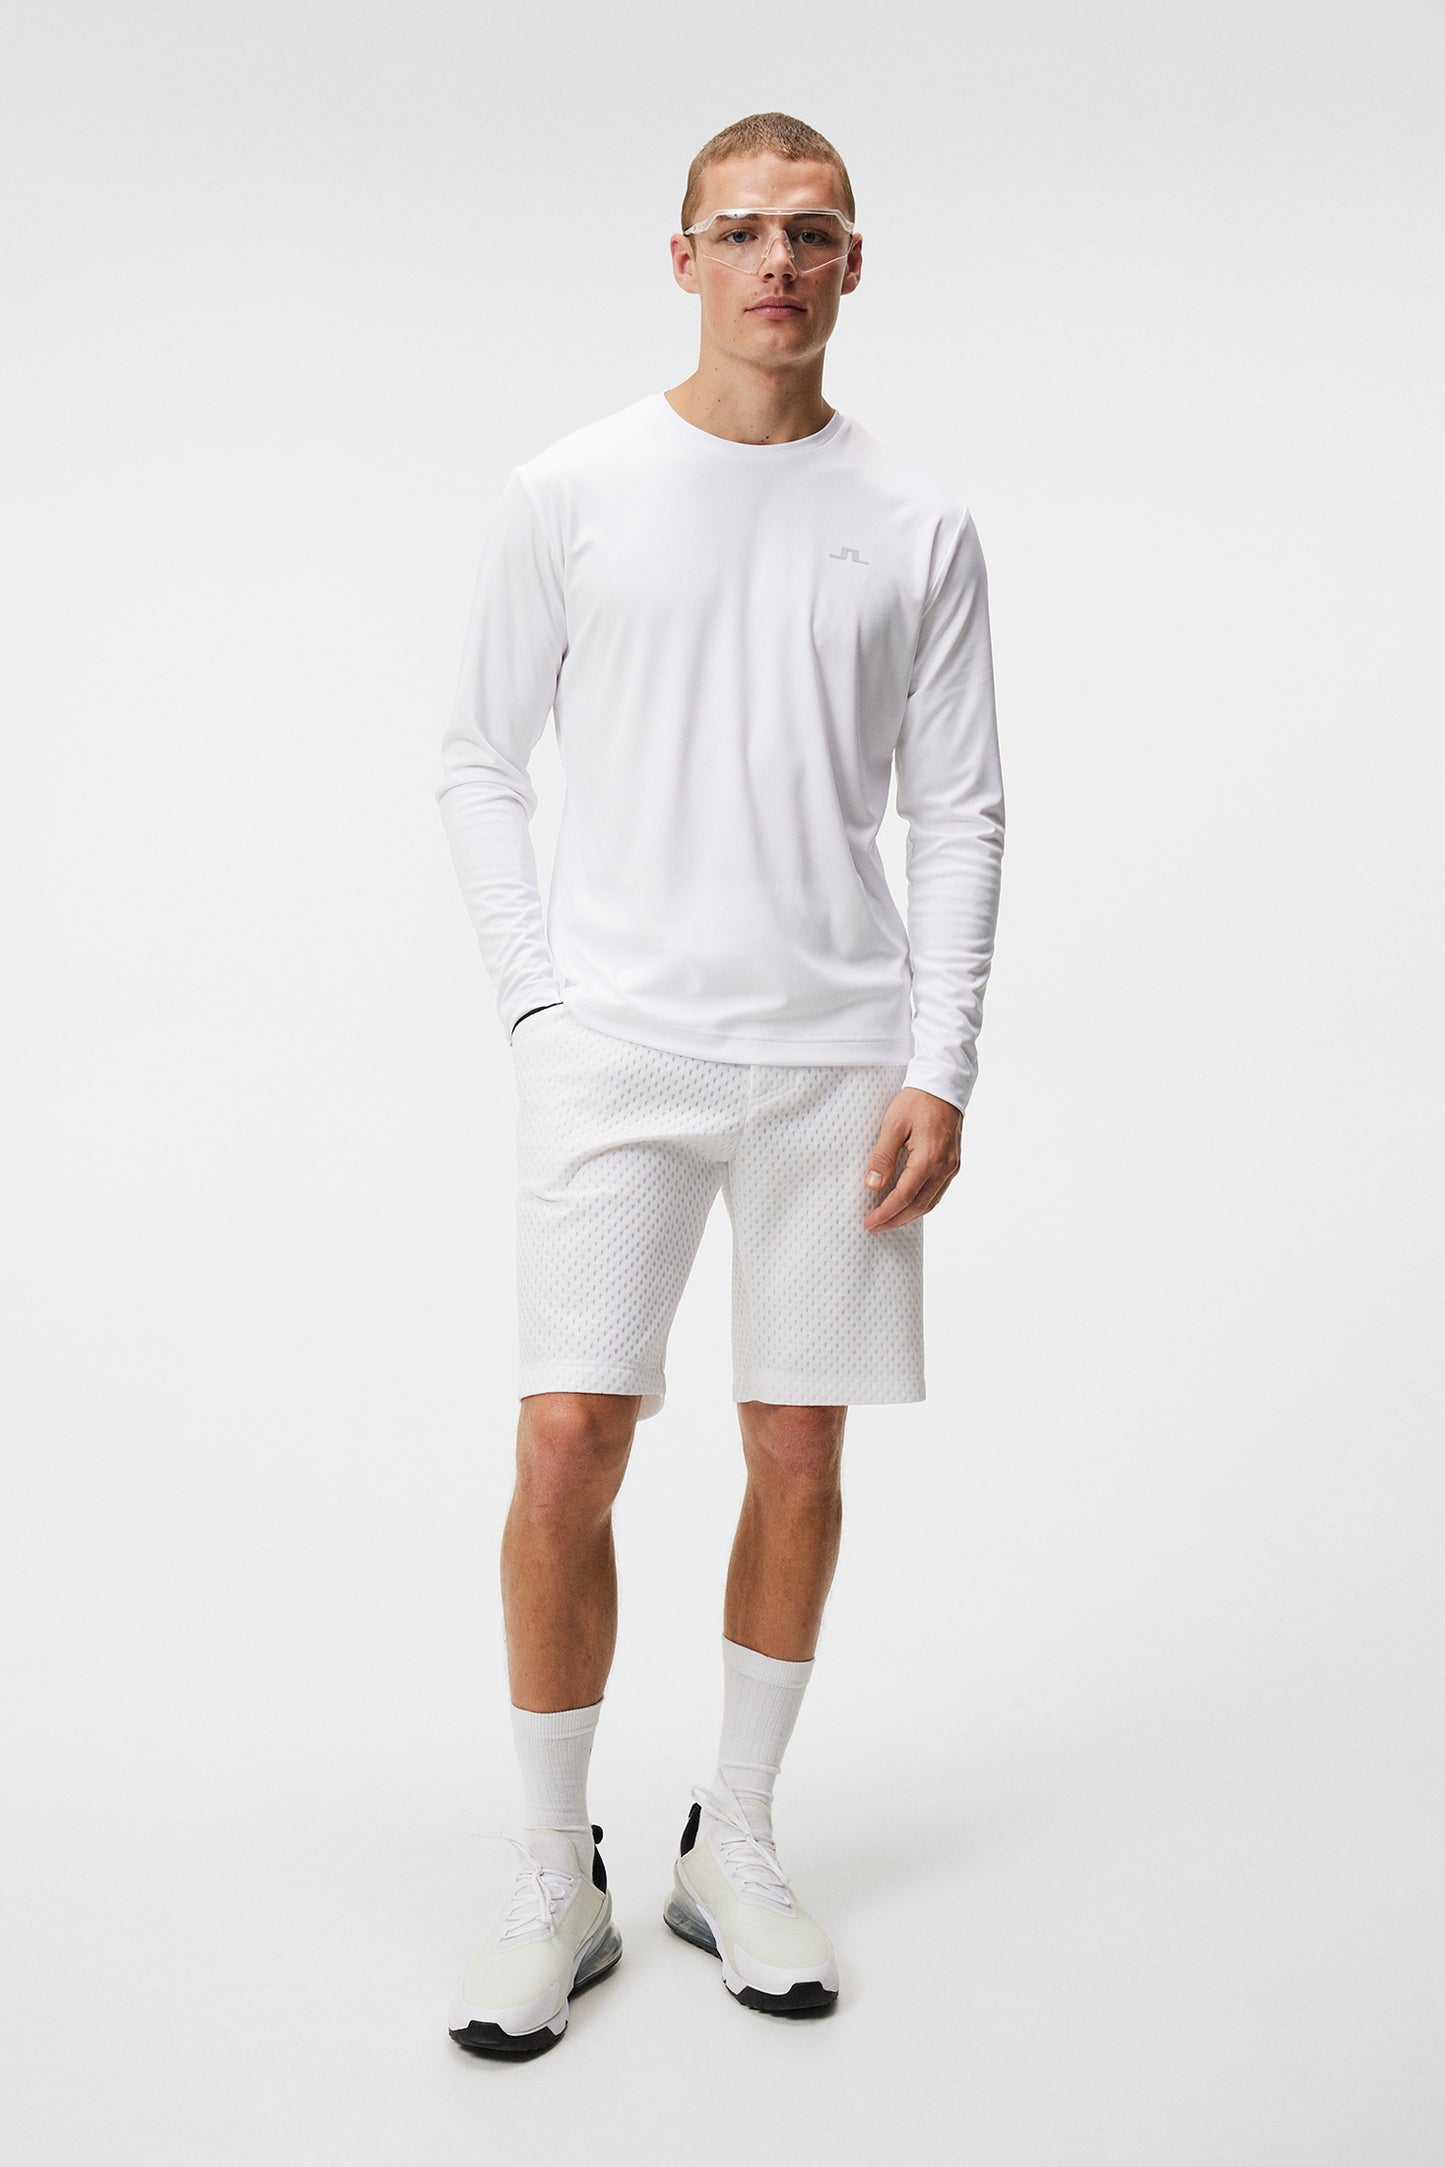 Ade T-shirt LS / White